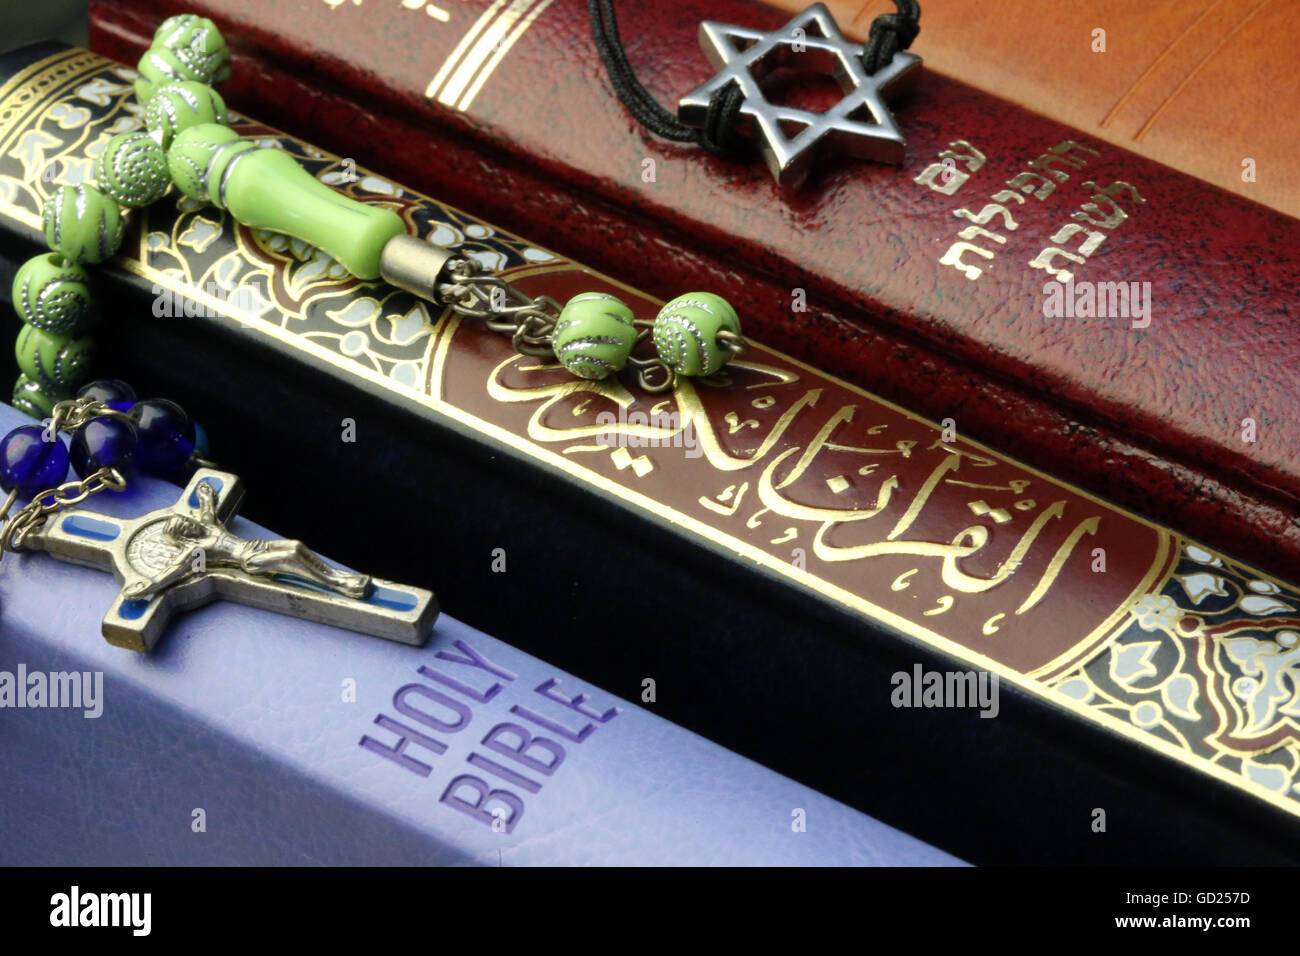 La Bible et du Coran, symboles interconfessionnel du christianisme, islam et judaïsme, les trois religions monothéistes, Haute-Savoie, France Banque D'Images